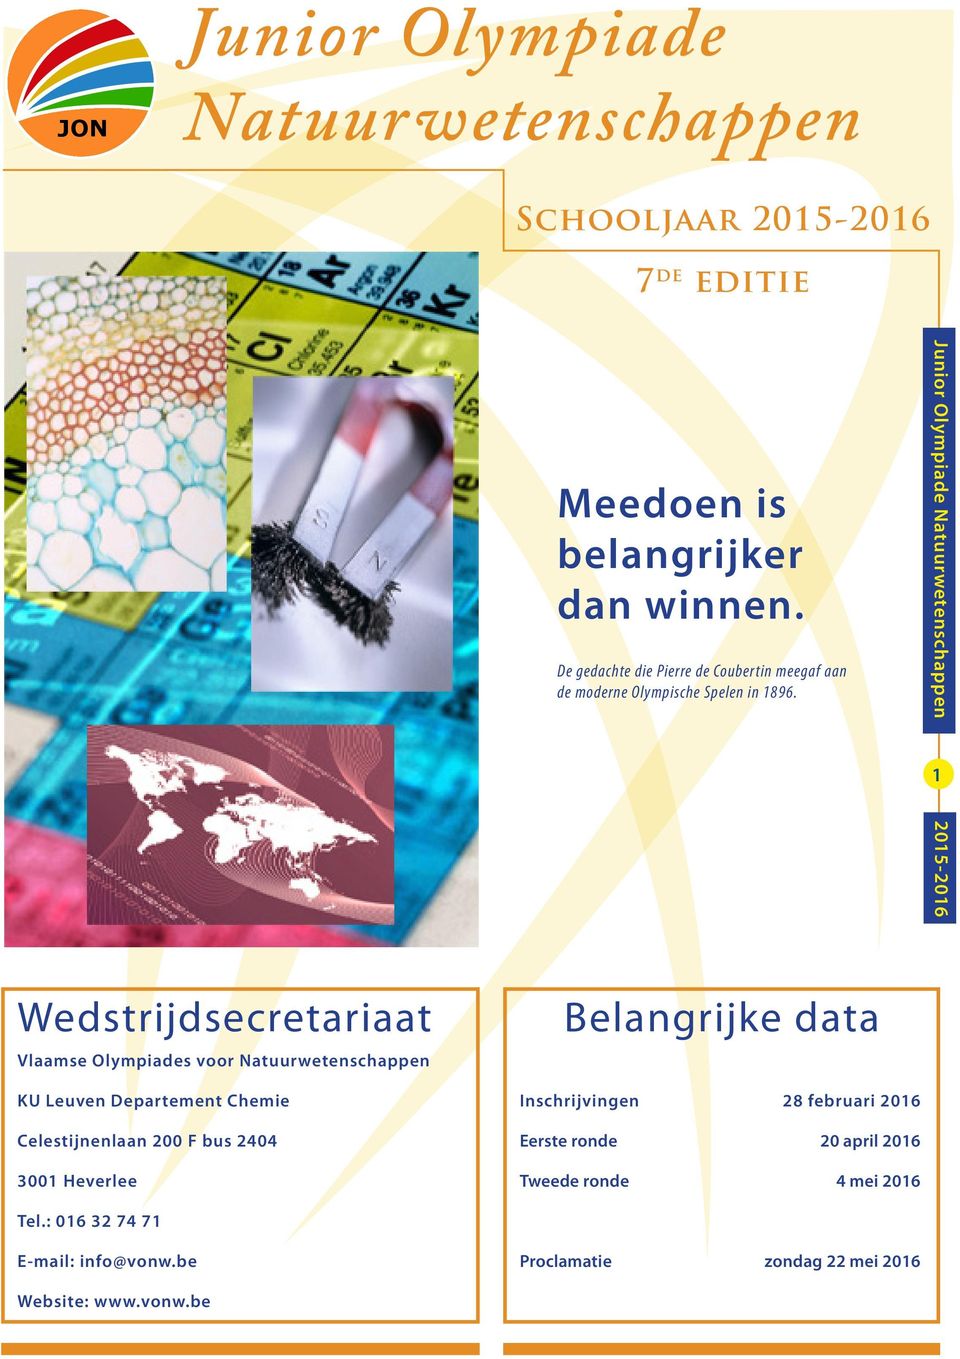 1 Wedstrijdsecretariaat Vlaamse Olympiades voor Natuurwetenschappen Belangrijke data KU Leuven Departement Chemie Celestijnenlaan